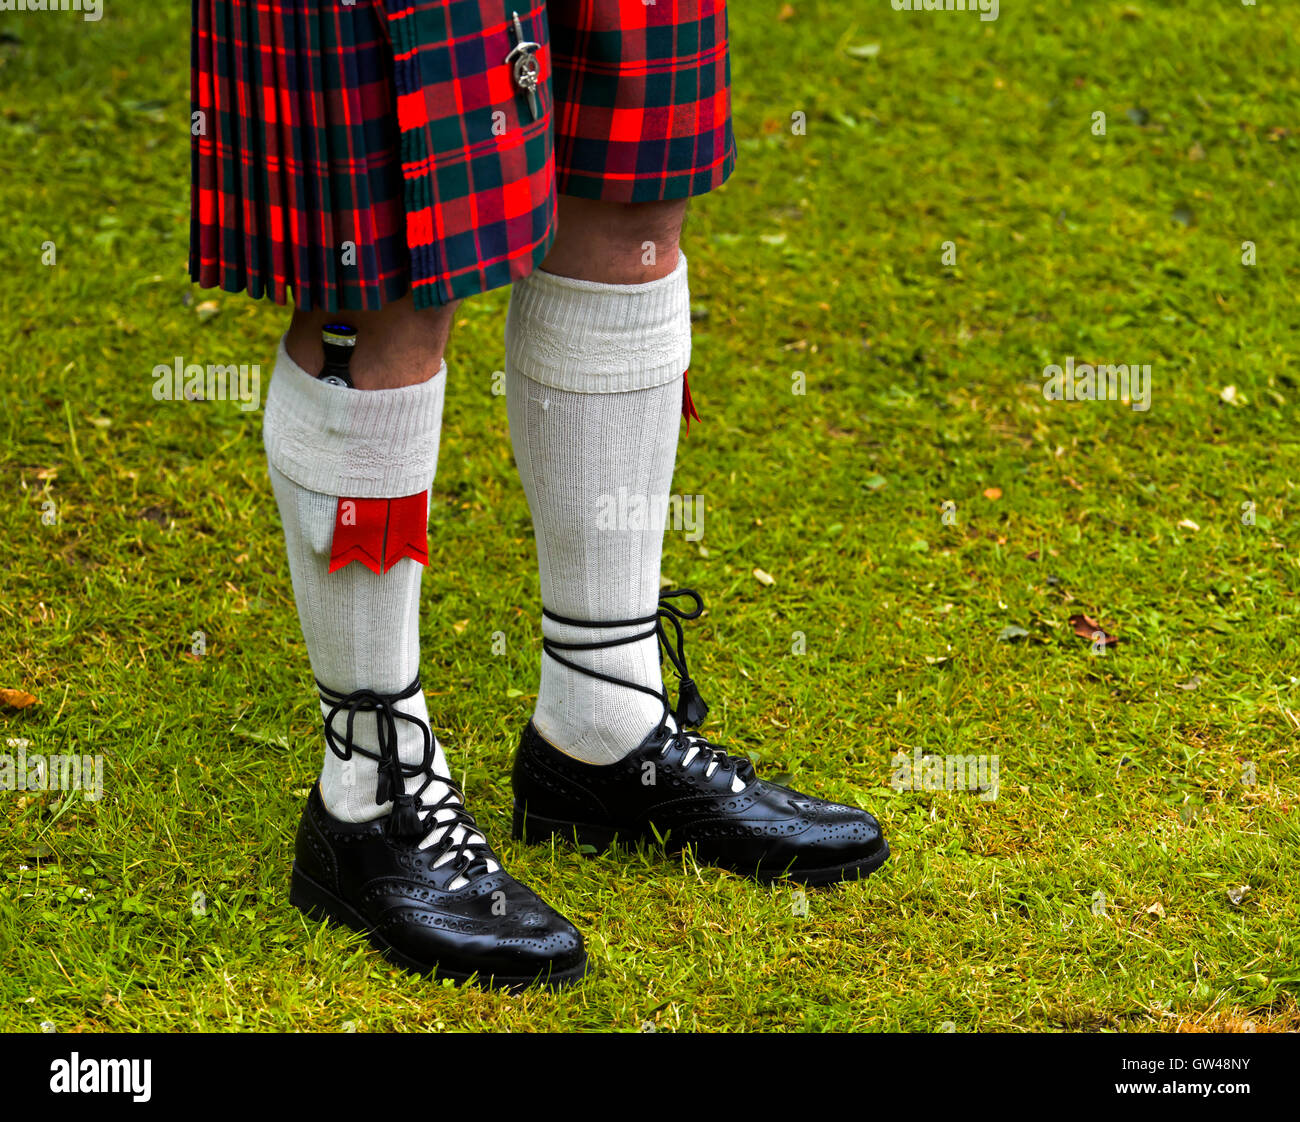 Highland traditionnelles,robe kilt kilt kilt, chaussettes, chaussettes de  flashs, Sgian Dubh et couteau cuir kilt écossais Ghillie Brogues chaussures  Photo Stock - Alamy